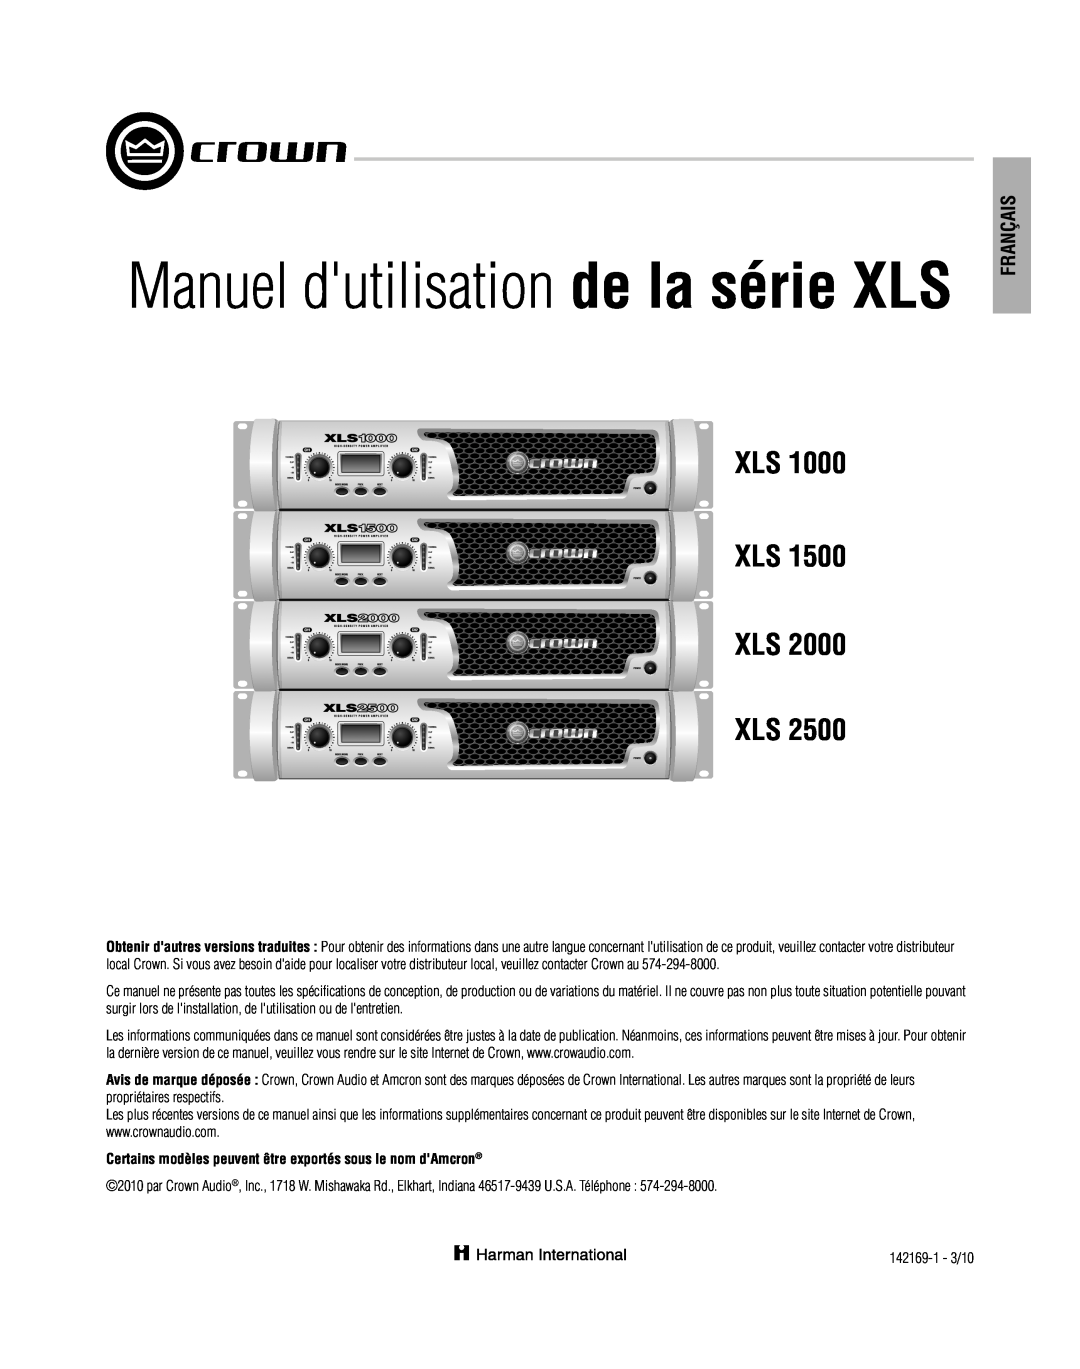 Crown XLS 1000 operation manual Français, Manuel dutilisation de la série XLS, Xls Xls Xls Xls 